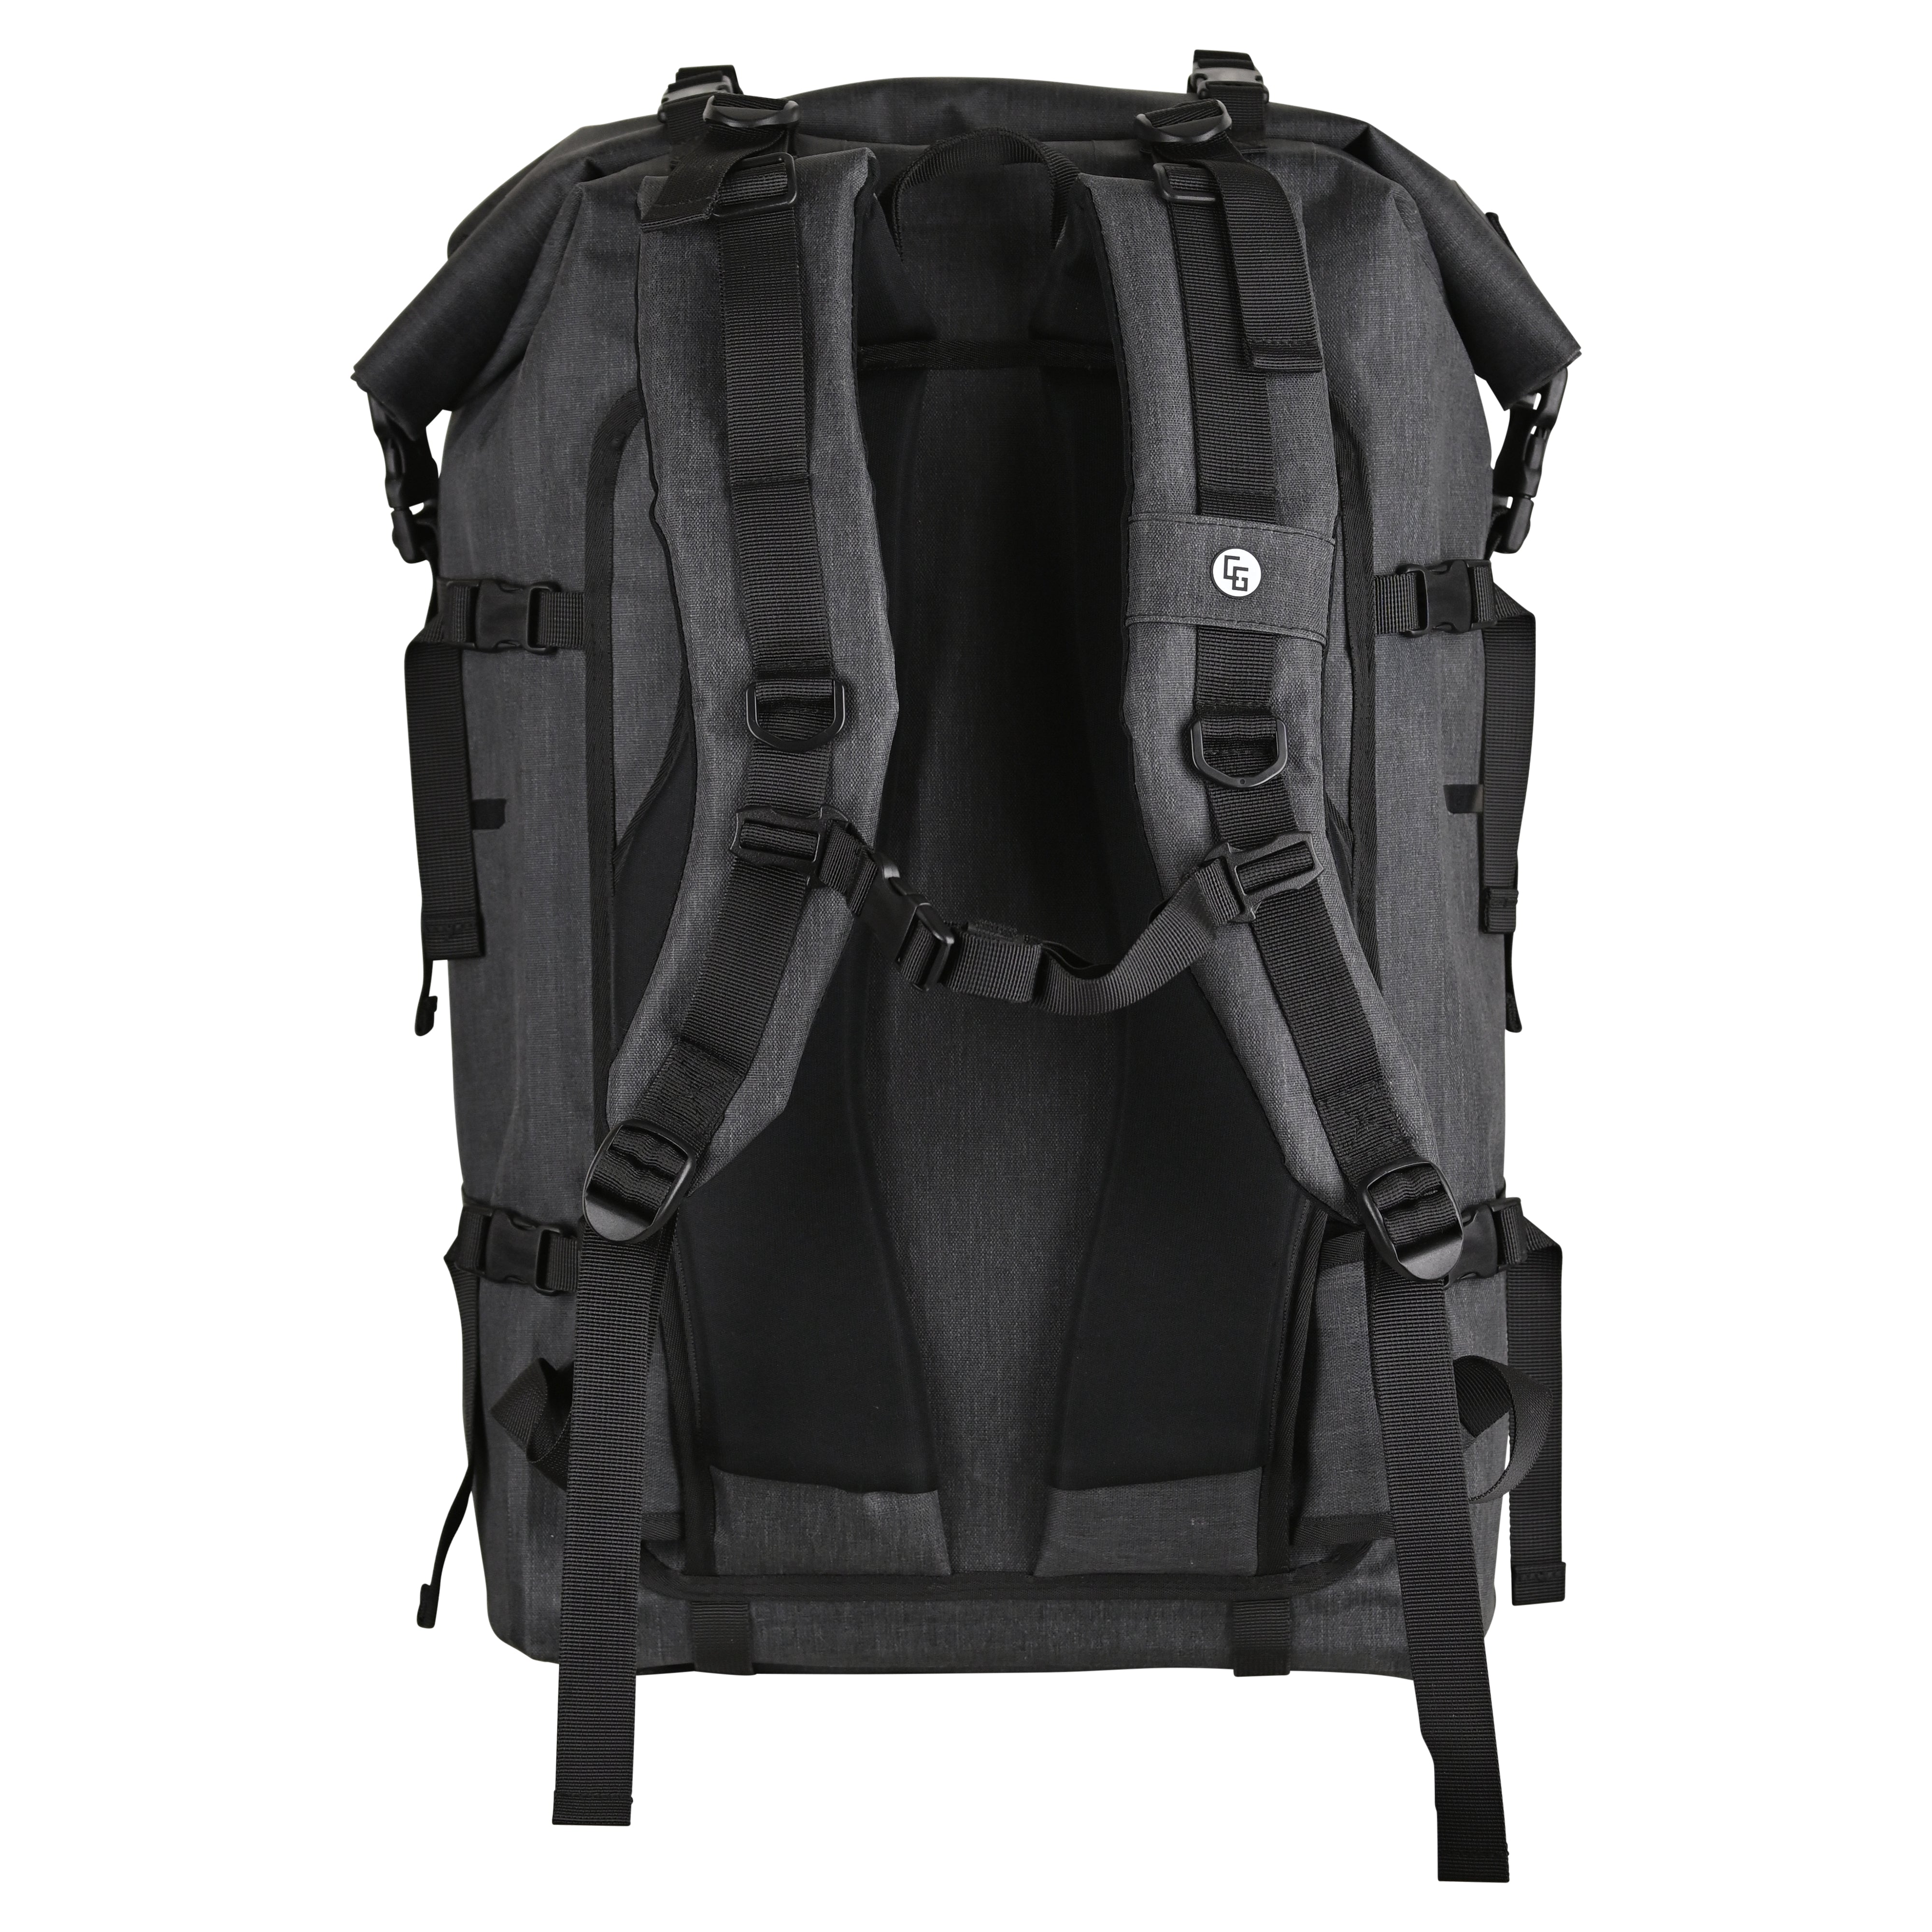 Buy CLN Breea Backpack 2023 Online